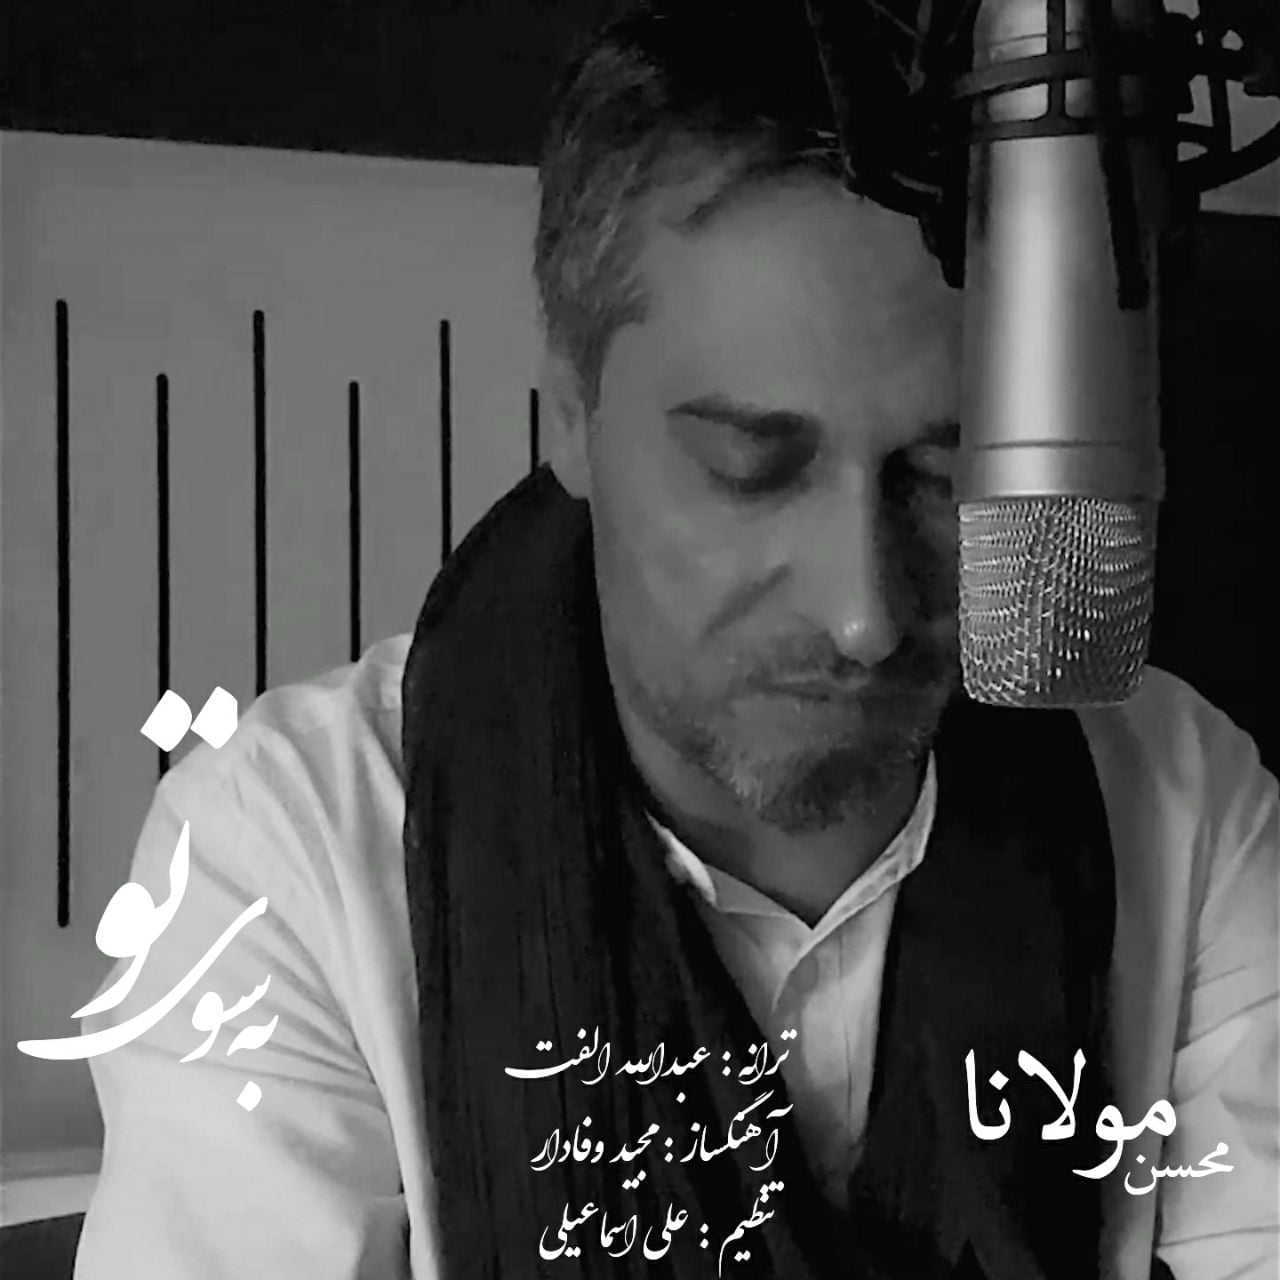 دانلود آهنگ جدید محسن مولانا با عنوان به سوی تو